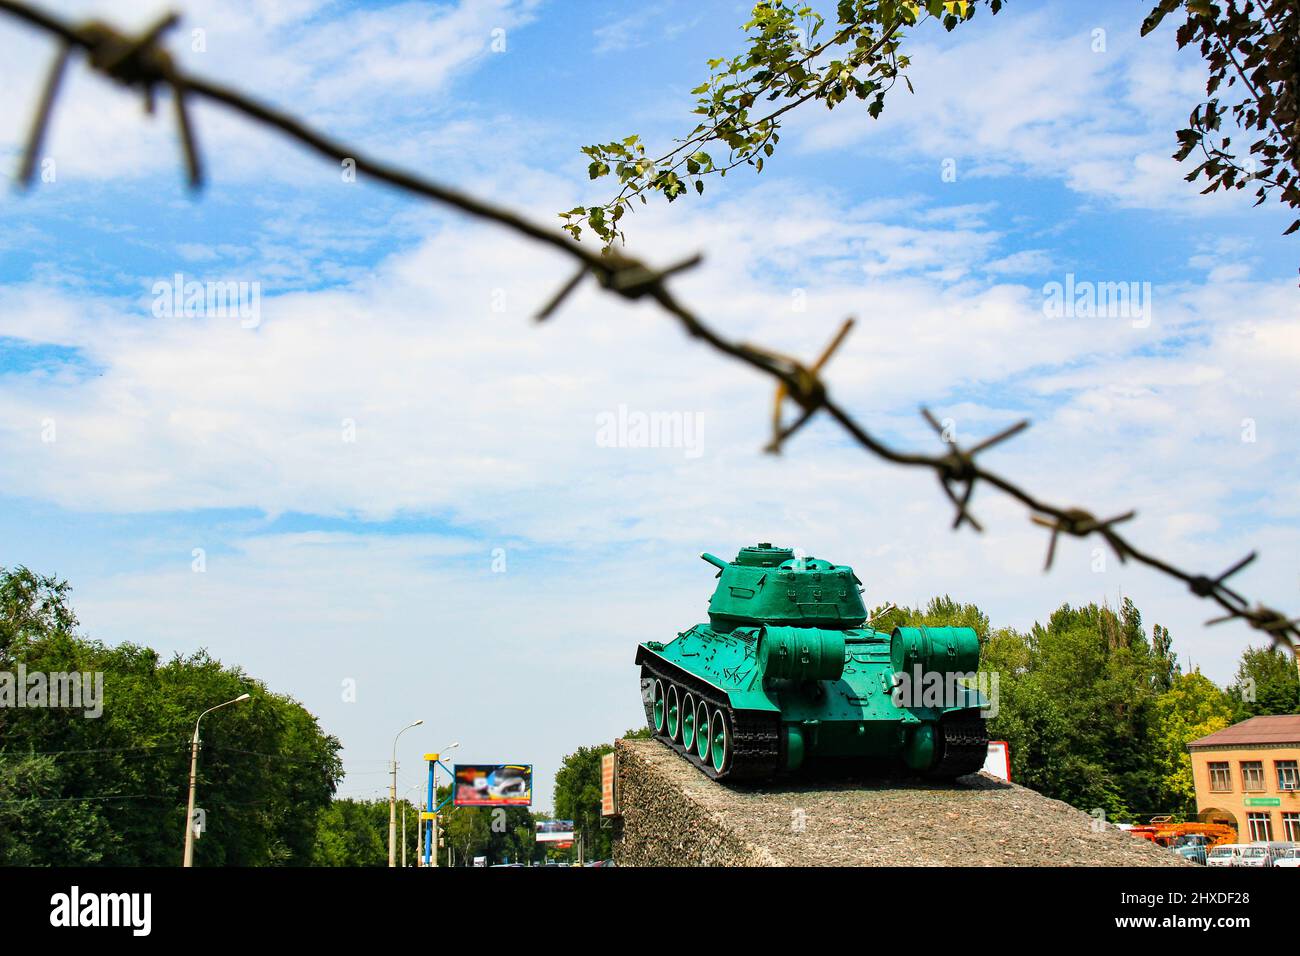 Monumento al vecchio serbatoio sovietico T-34. Un carro armato militare si erge su un piedistallo sullo sfondo di un cielo blu, filo spinato, alberi verdi, strada della città. Foto Stock